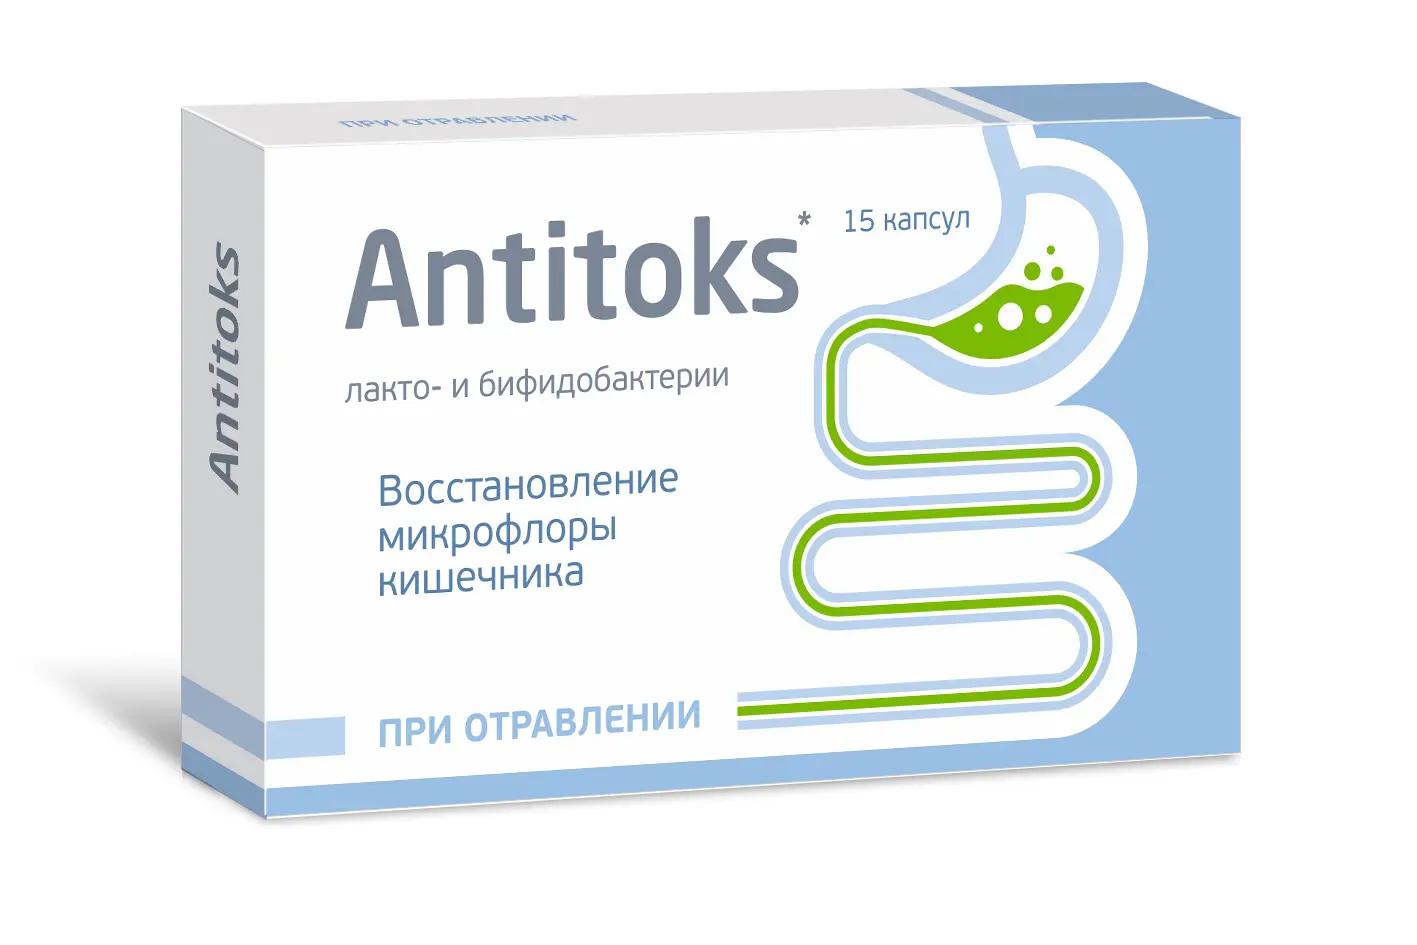 Антитокс пробиотик. Таблетки для нормализации микрофлоры кишечника. Капсулы для восстановления микрофлоры кишечника. Препараты для кишечника в капсулах. Lbb капсулы отзывы